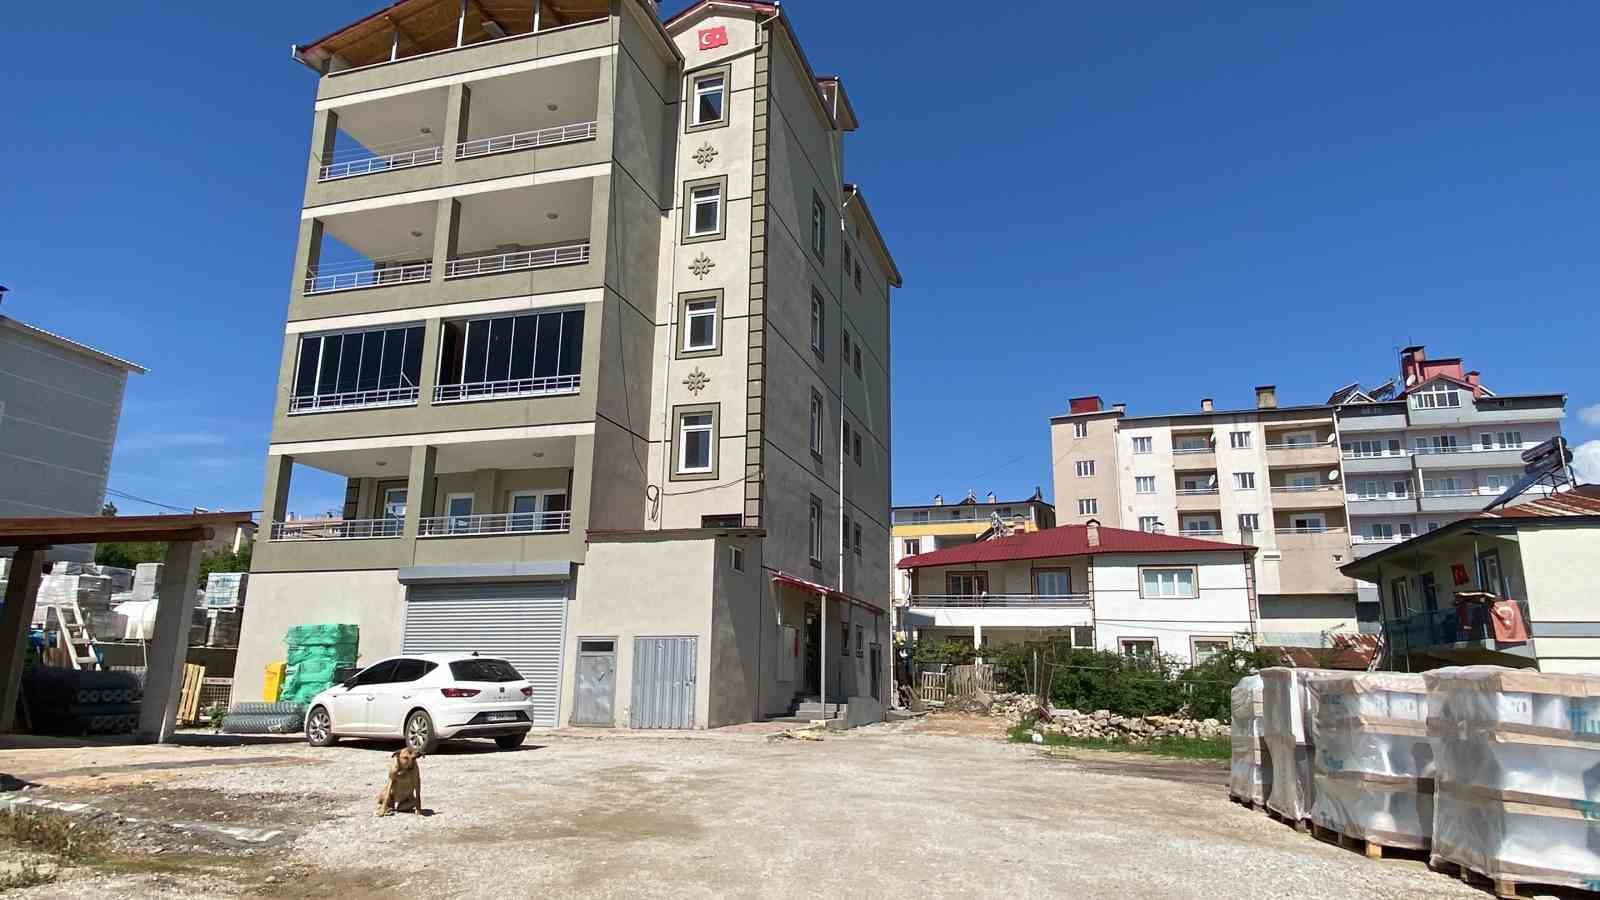 Adana'da jandarma karakol komutanı evinde ölü bulundu